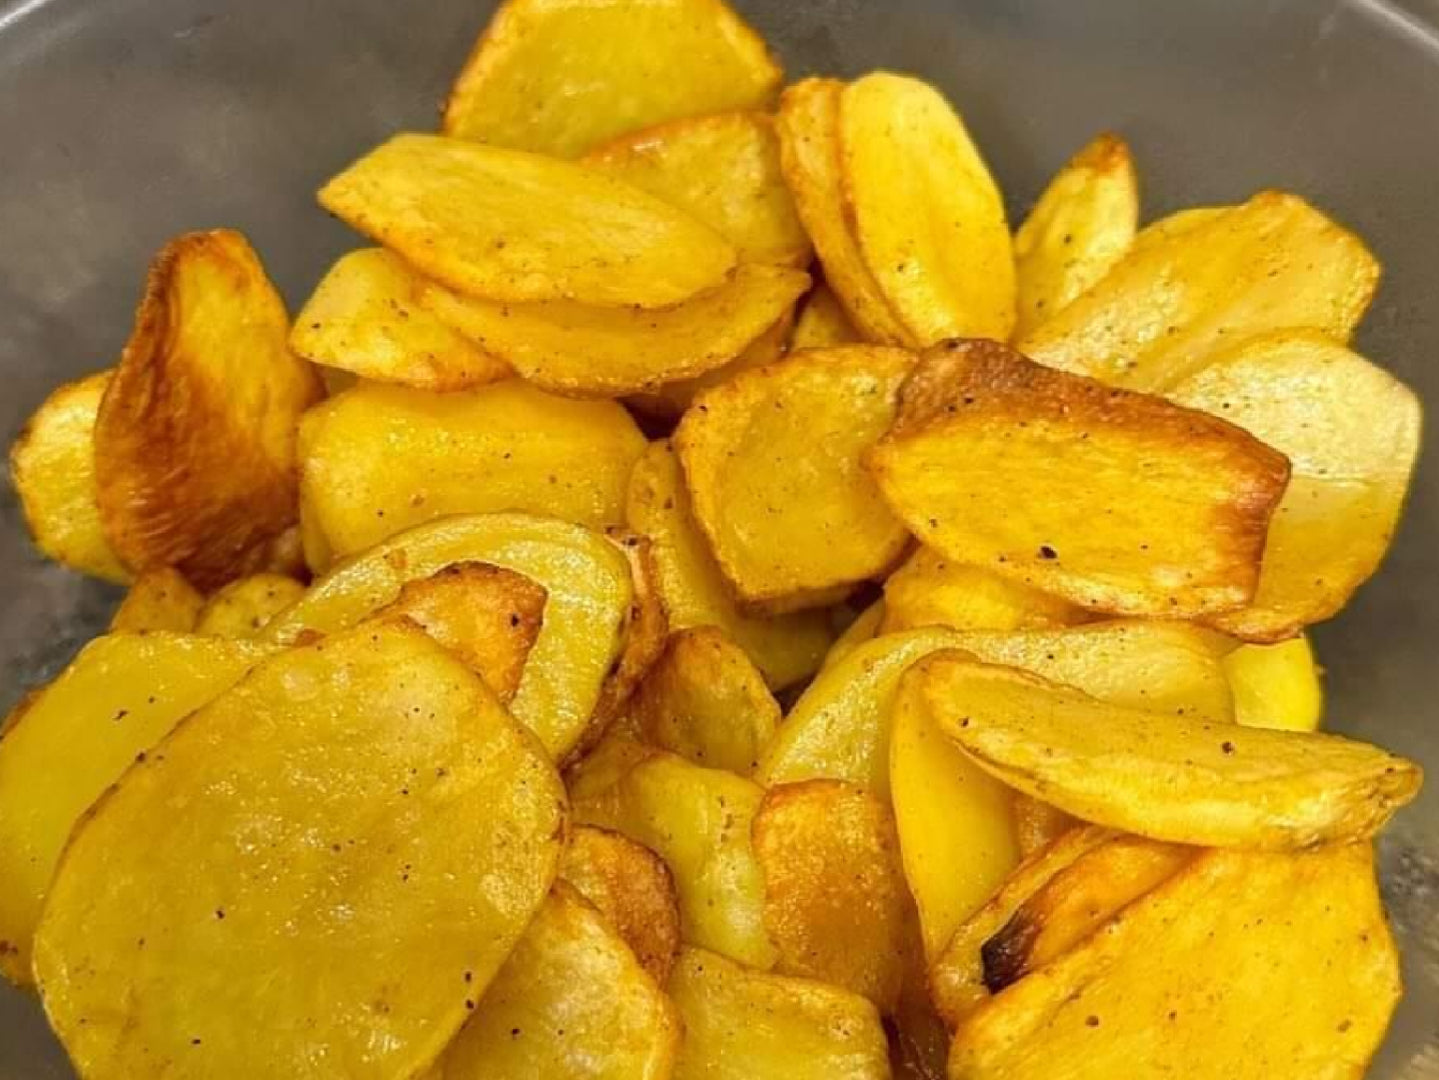 Knusprig, kartoffelig, lecker!  So gut gelingen die Kartoffeln mit dem Rezept von Nutriblogger in unserem NUTRI-FRYER, grandios! Bratkartoffeln aus der Heißluftfritteuse